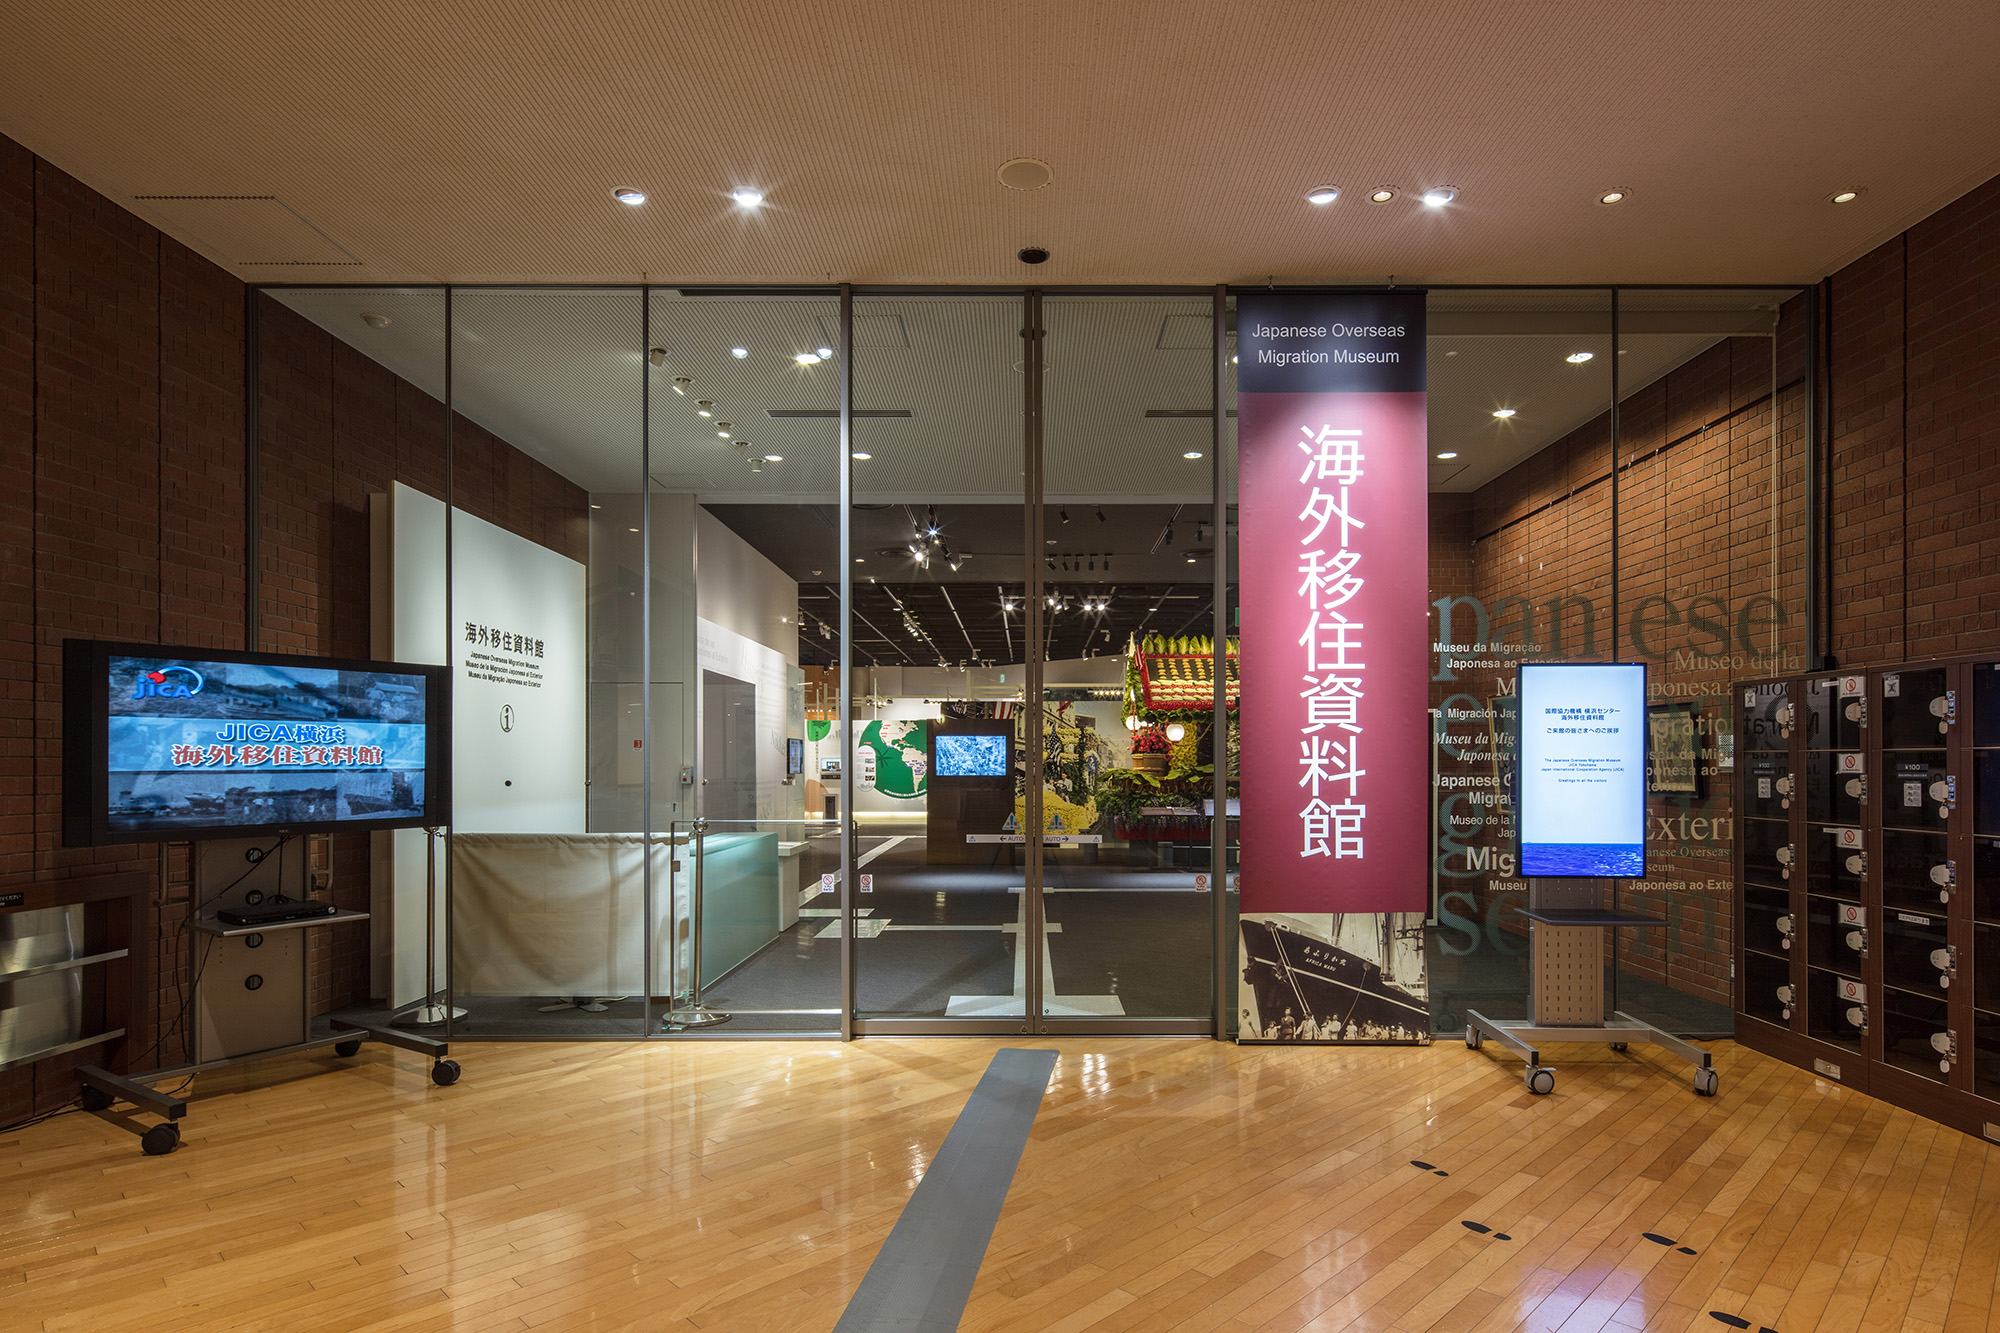 พิพิธภัณฑ์การย้ายถิ่นฐานญี่ปุ่นโพ้นทะเล